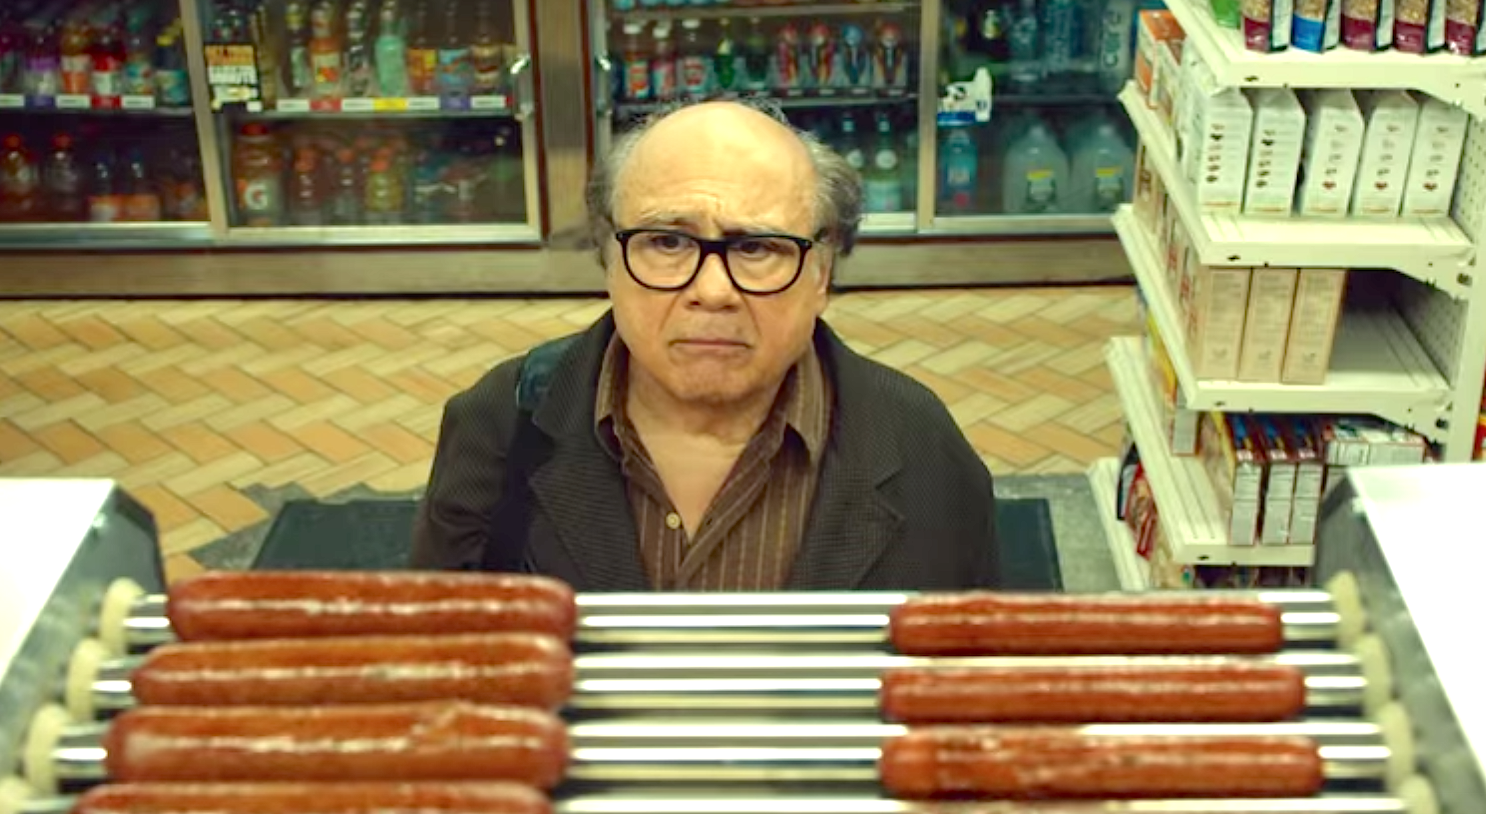 Wiener-Dog (2016), Danny DeVito